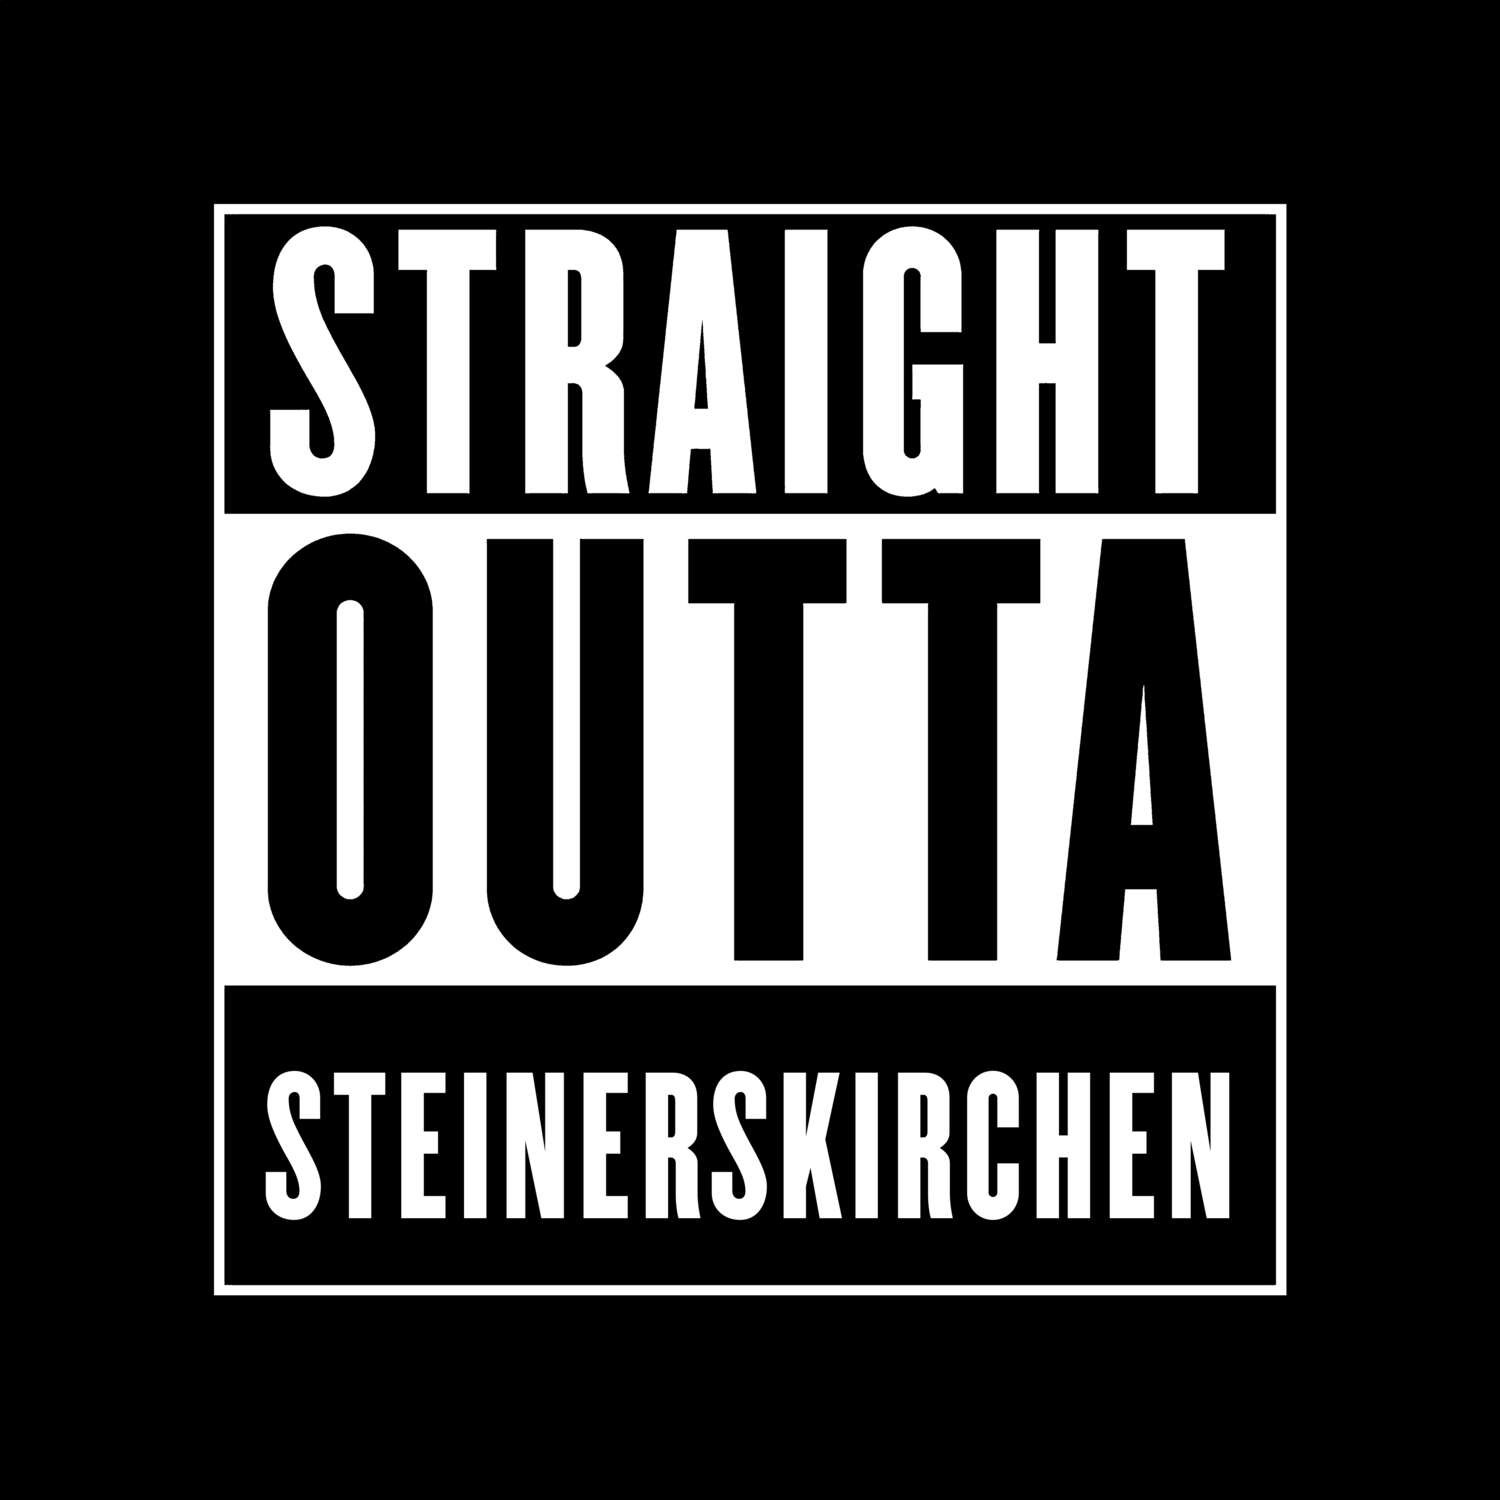 Steinerskirchen T-Shirt »Straight Outta«